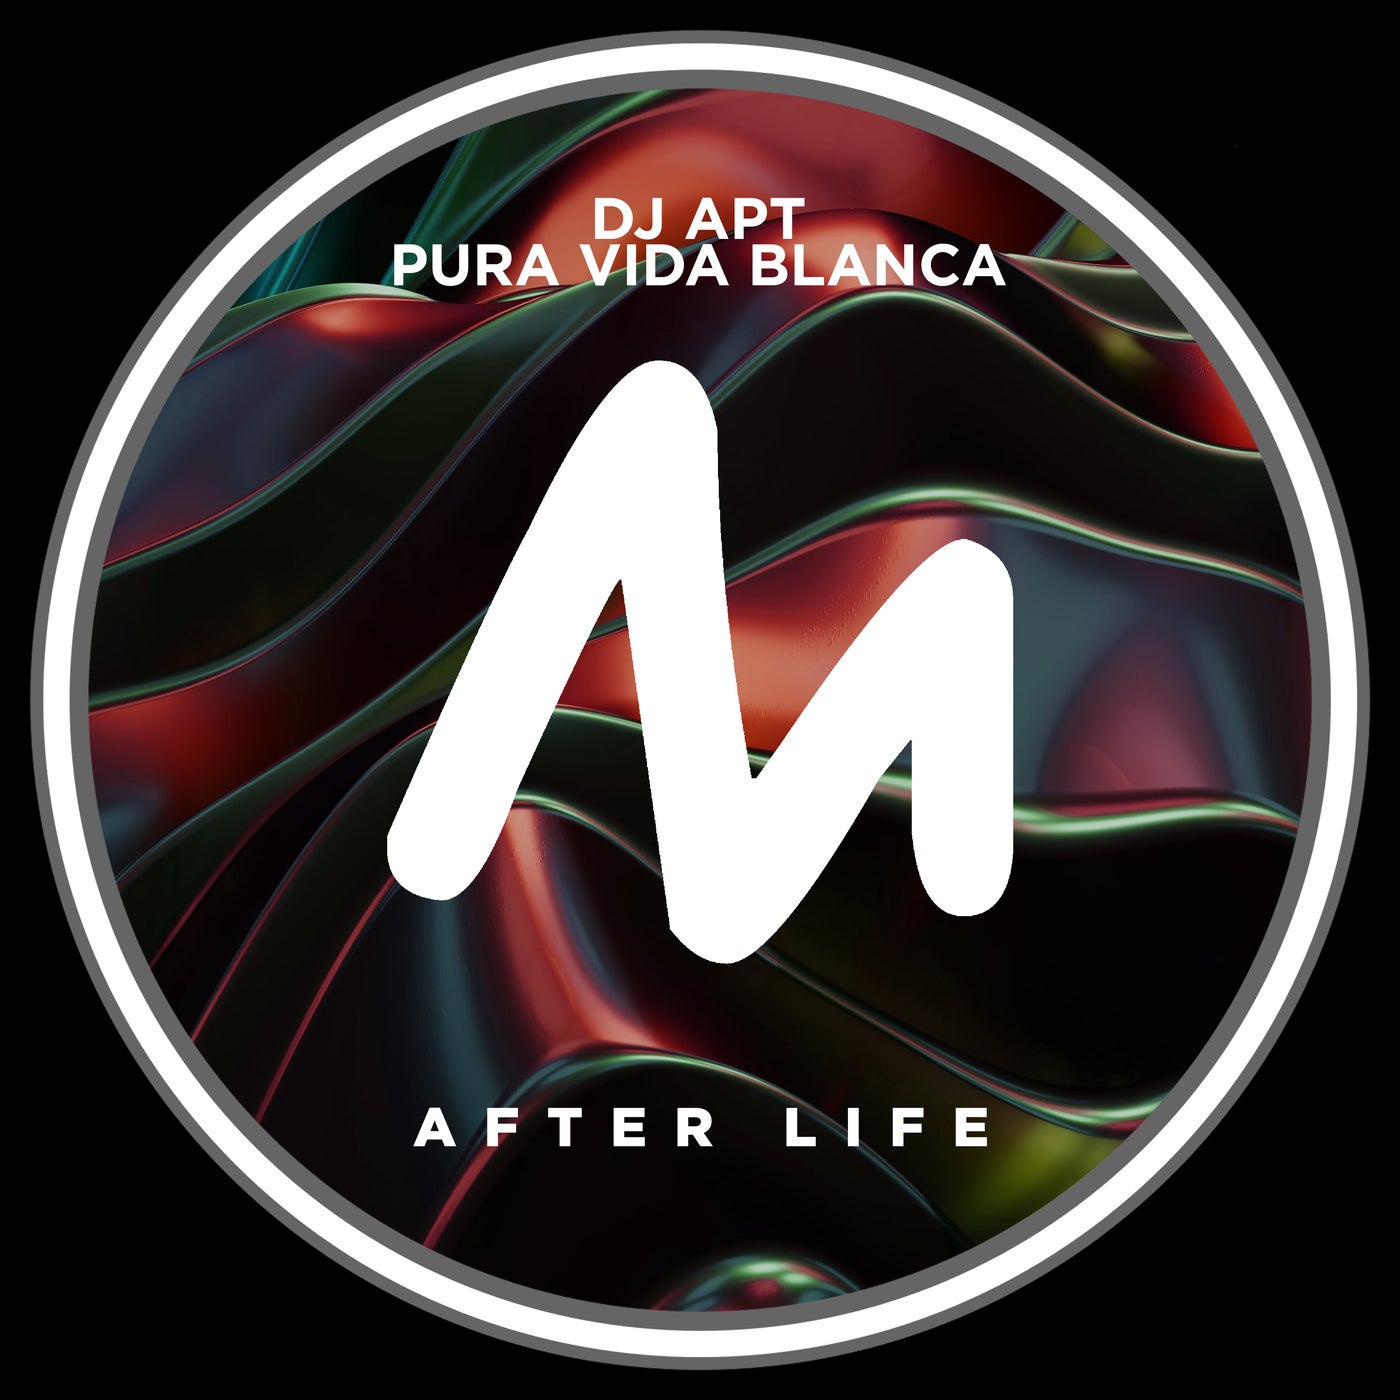 DJ Apt, Pura Vida Blanca – After Life [10280402]